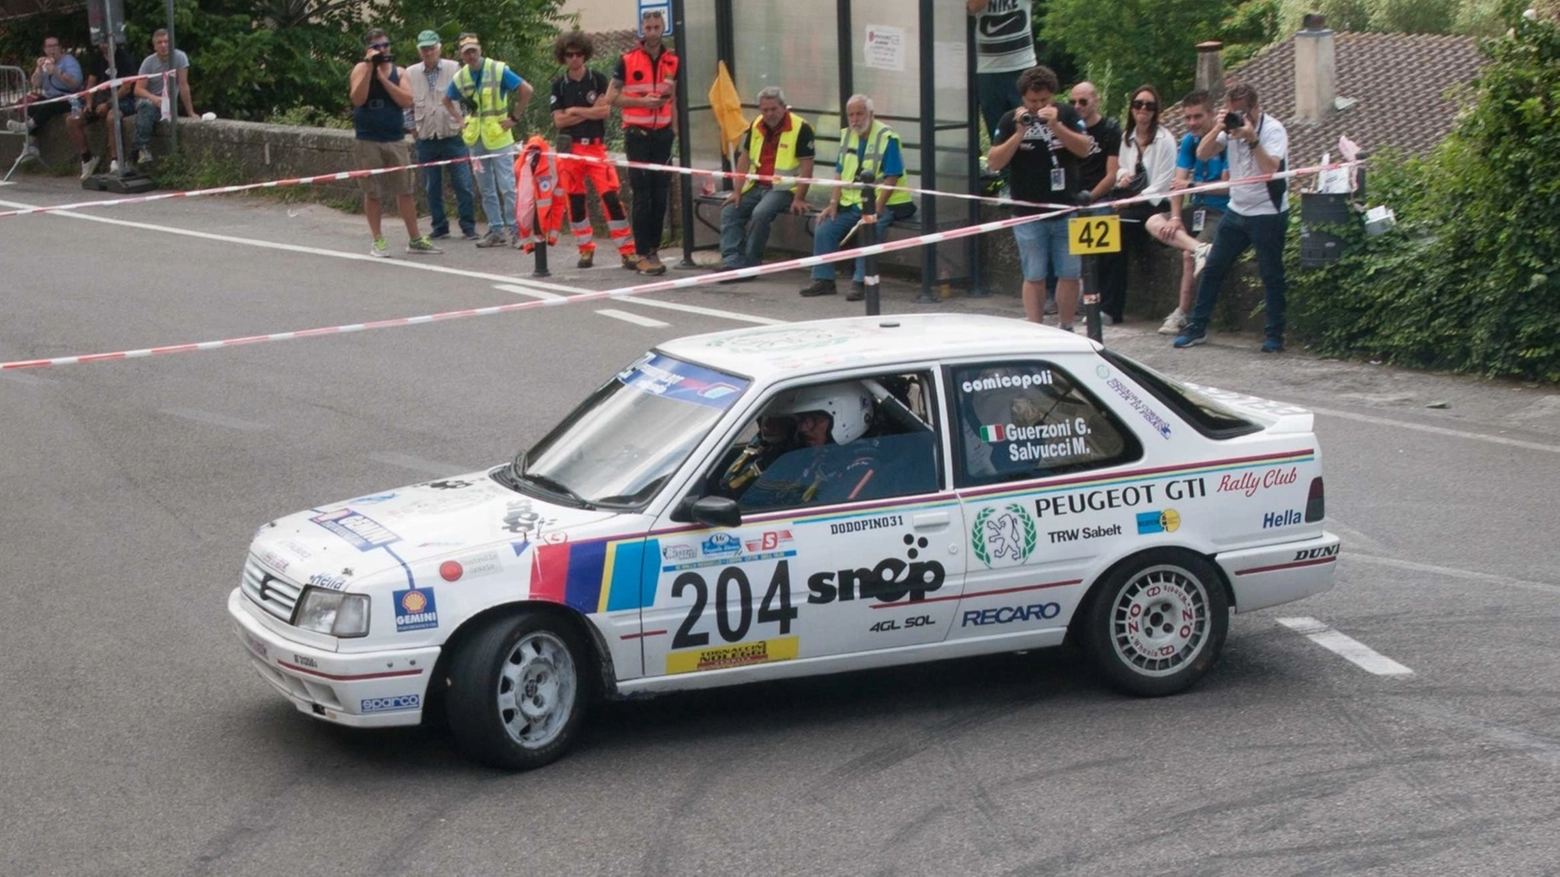 La scuderia pisana ha raccolto buoni risultati e adesso si concentra sul Rally Valdinievole del 29 e 30 giugno